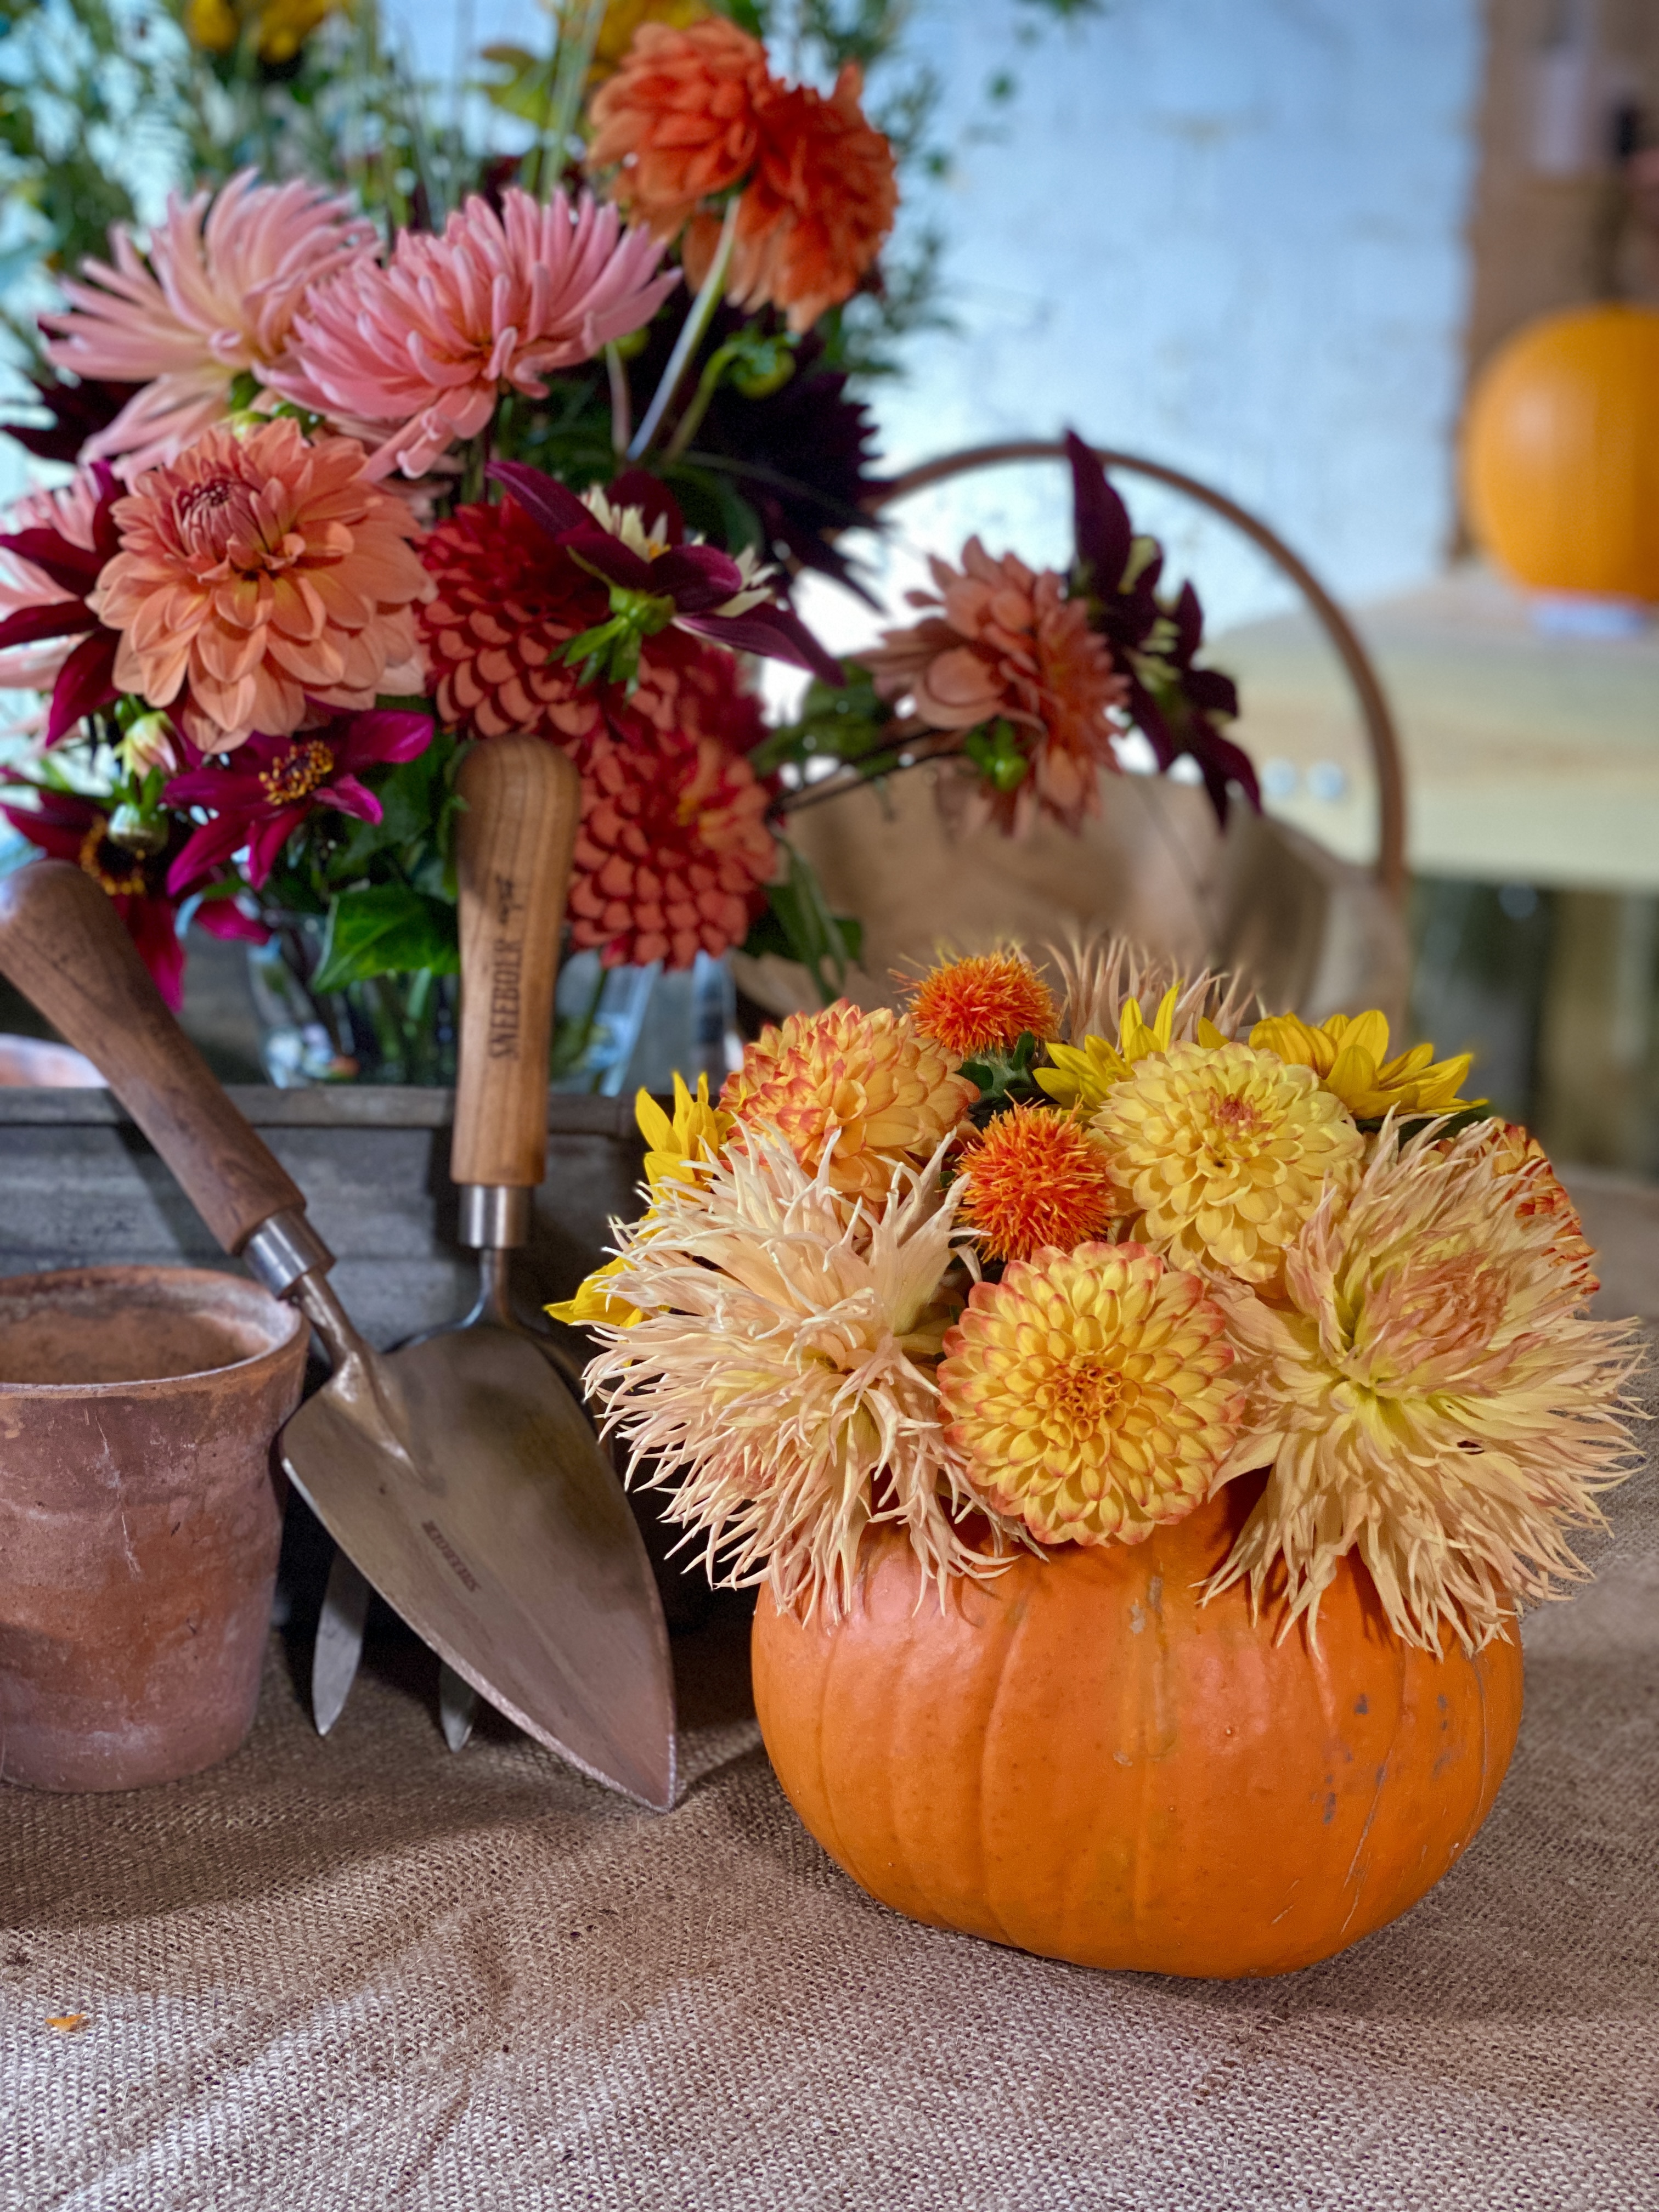 Creating An Autumn Pumpkin Arrangement